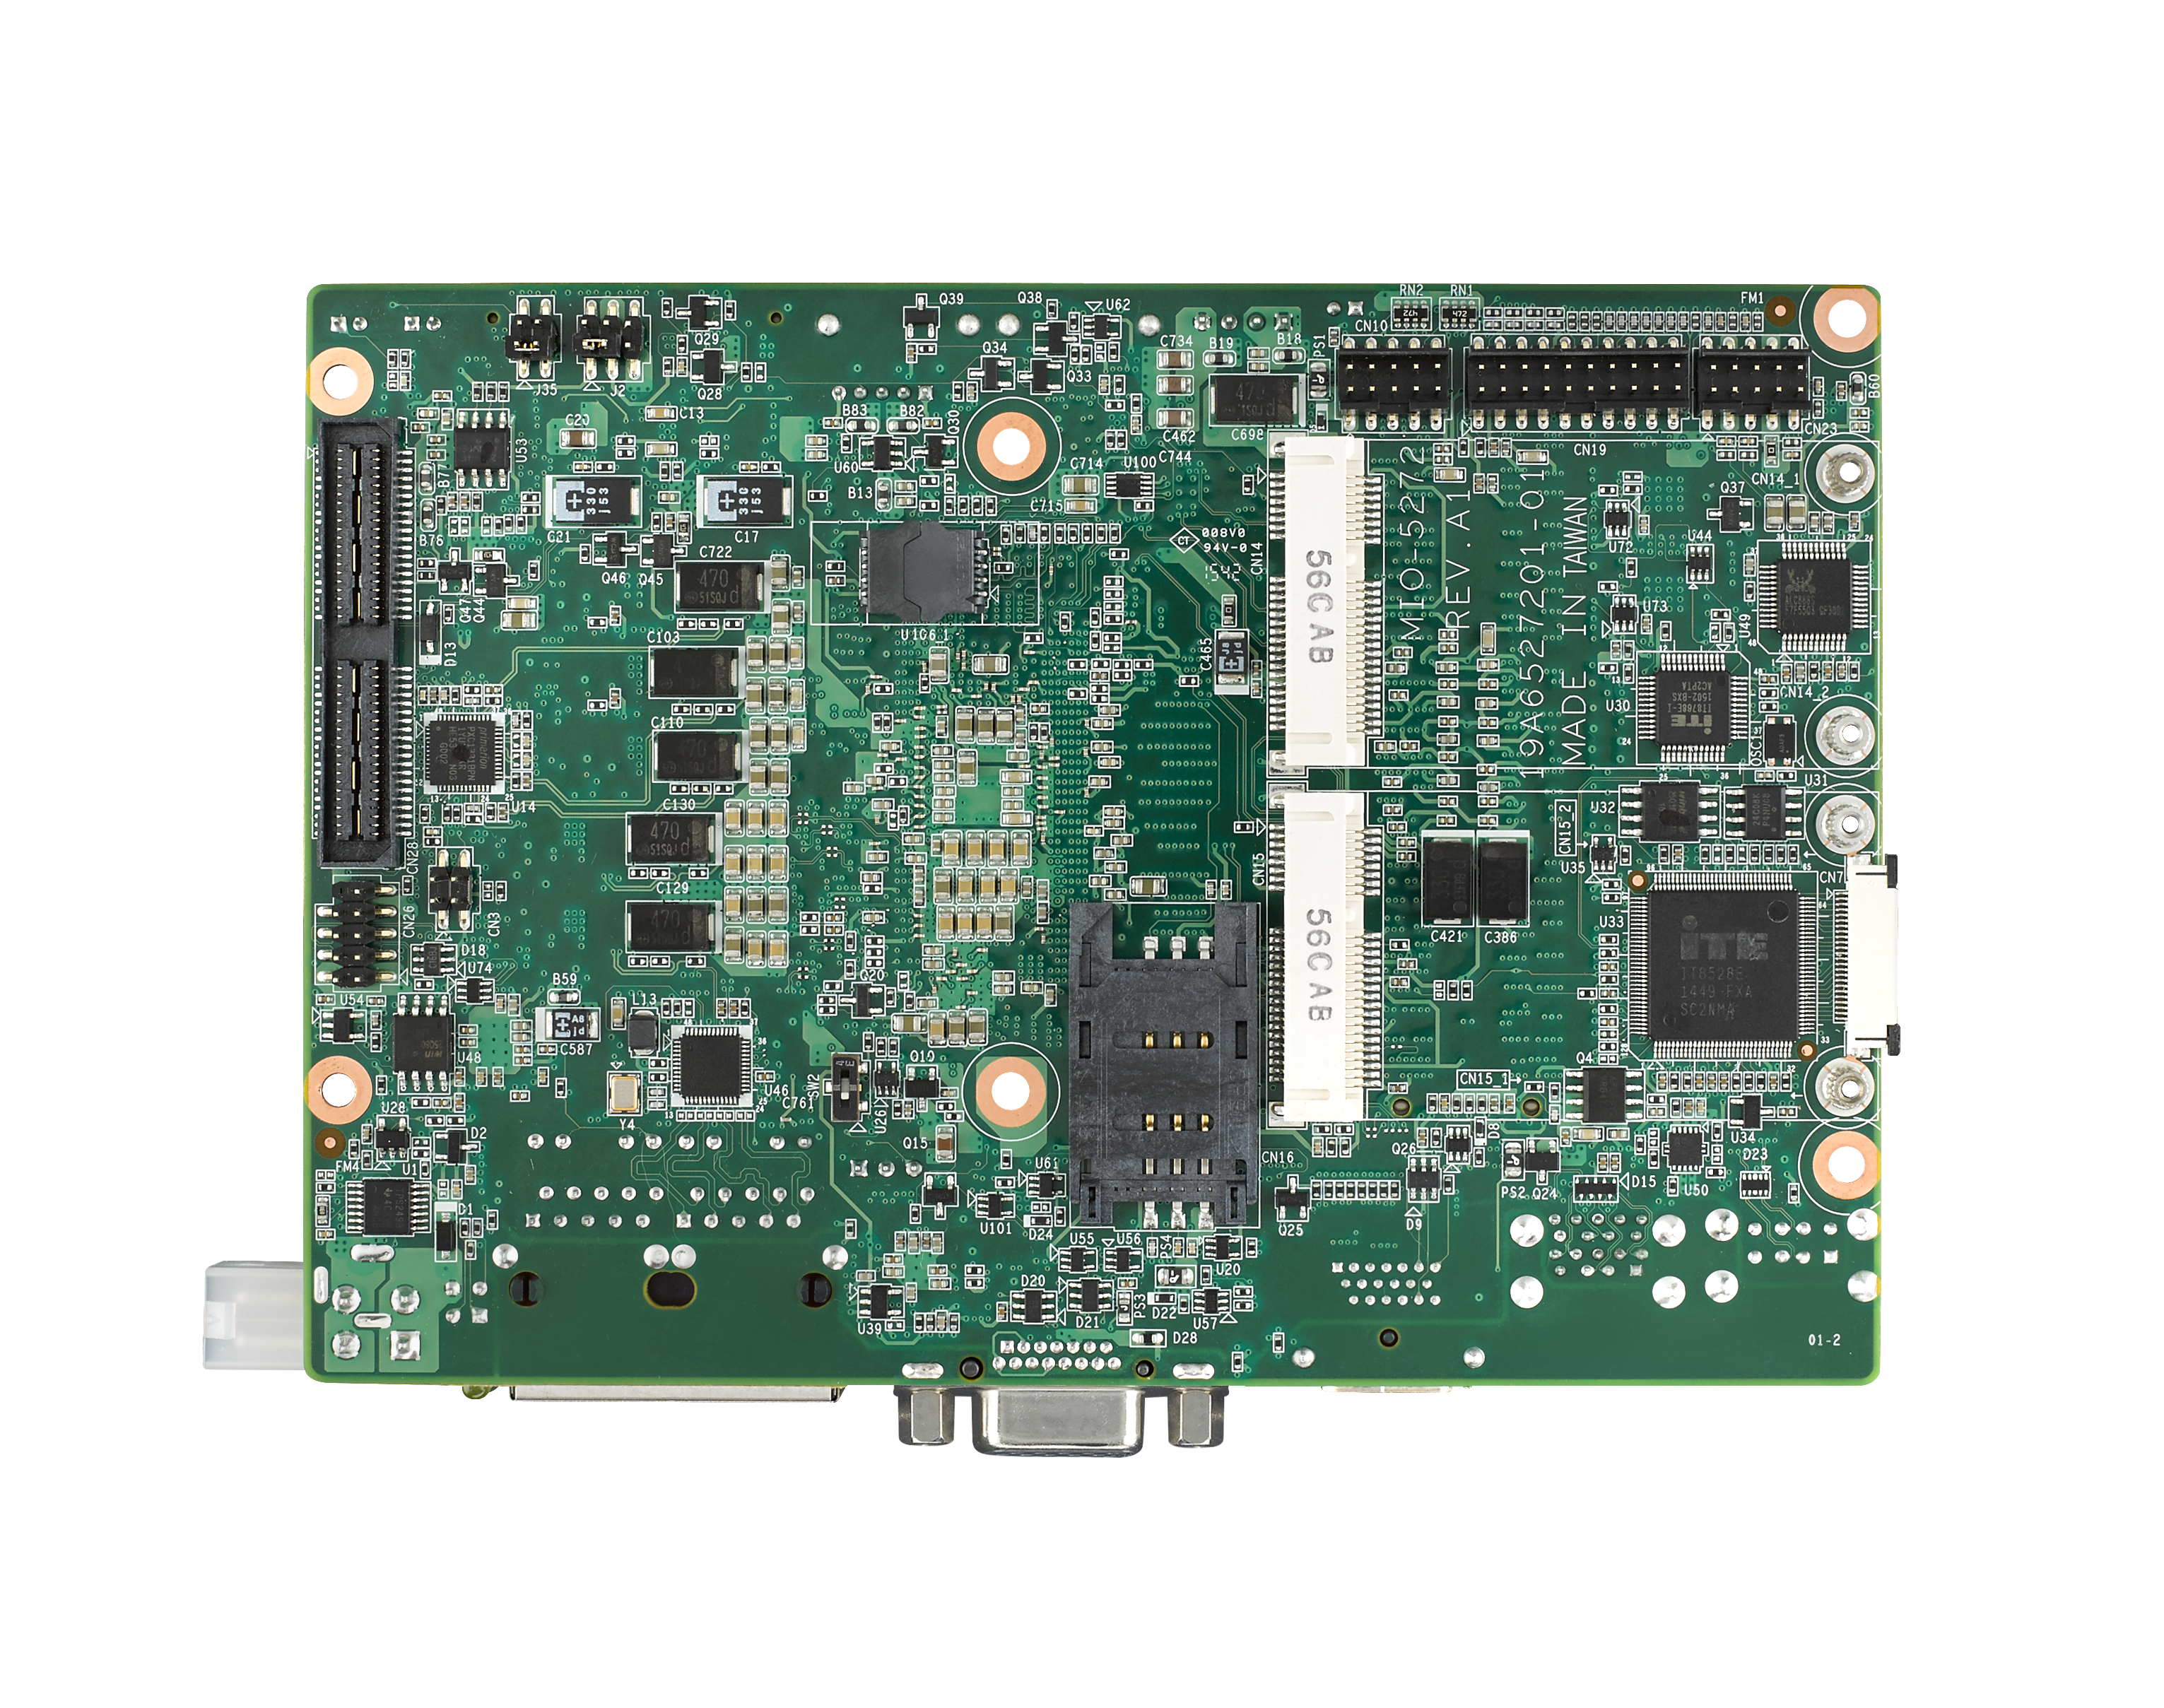 6th Gen i3 6100U 3.5” Compact SBC with DDR3L, VGA, HDMI, 48-bit LVDS, 2 GbE, 
2 Mini PCIe, mSATA, Fanless, MIOe